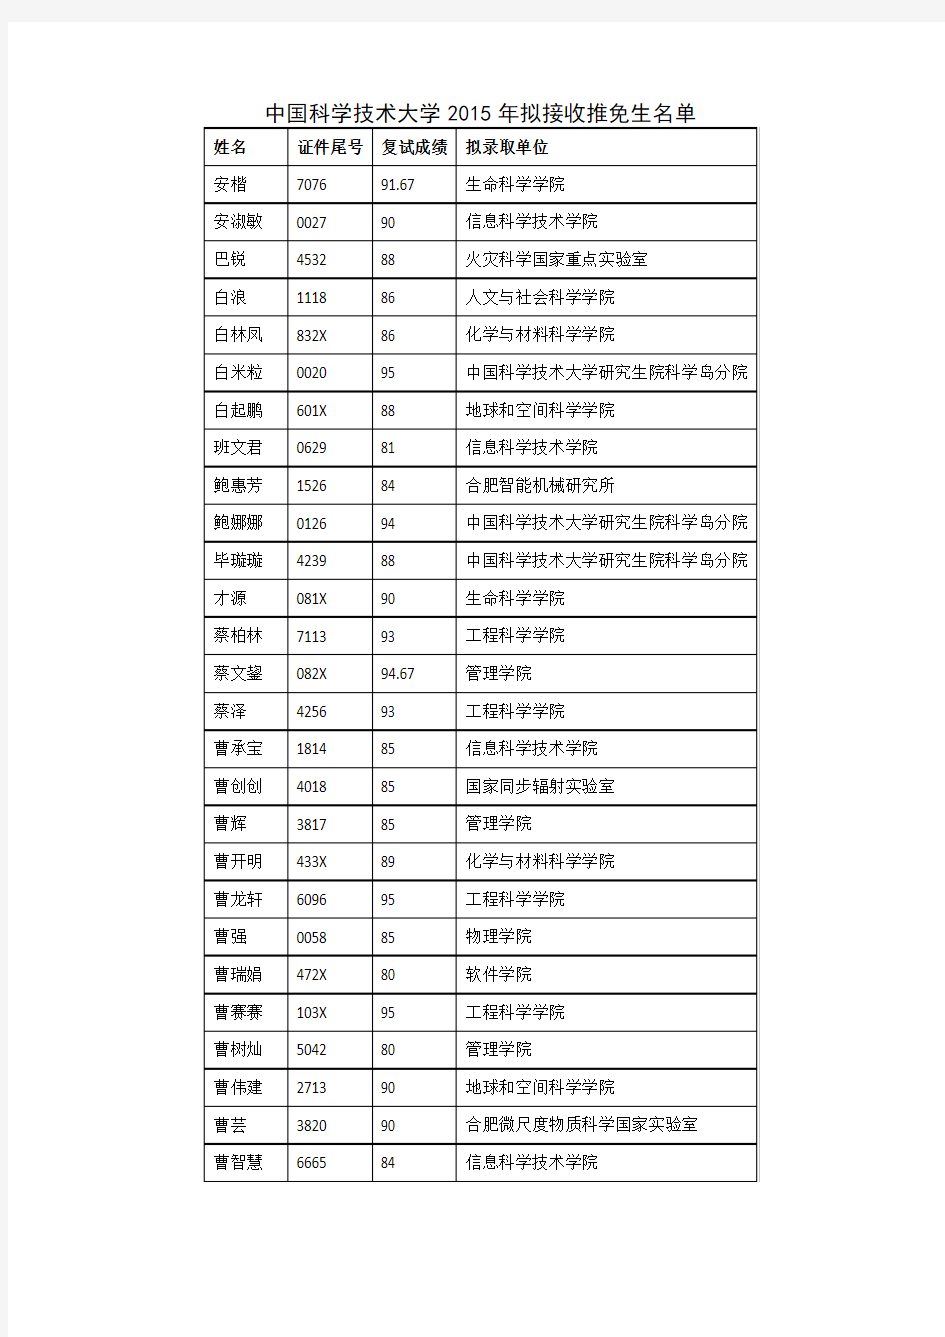 中国科学技术大学2015年拟接收推免生名单